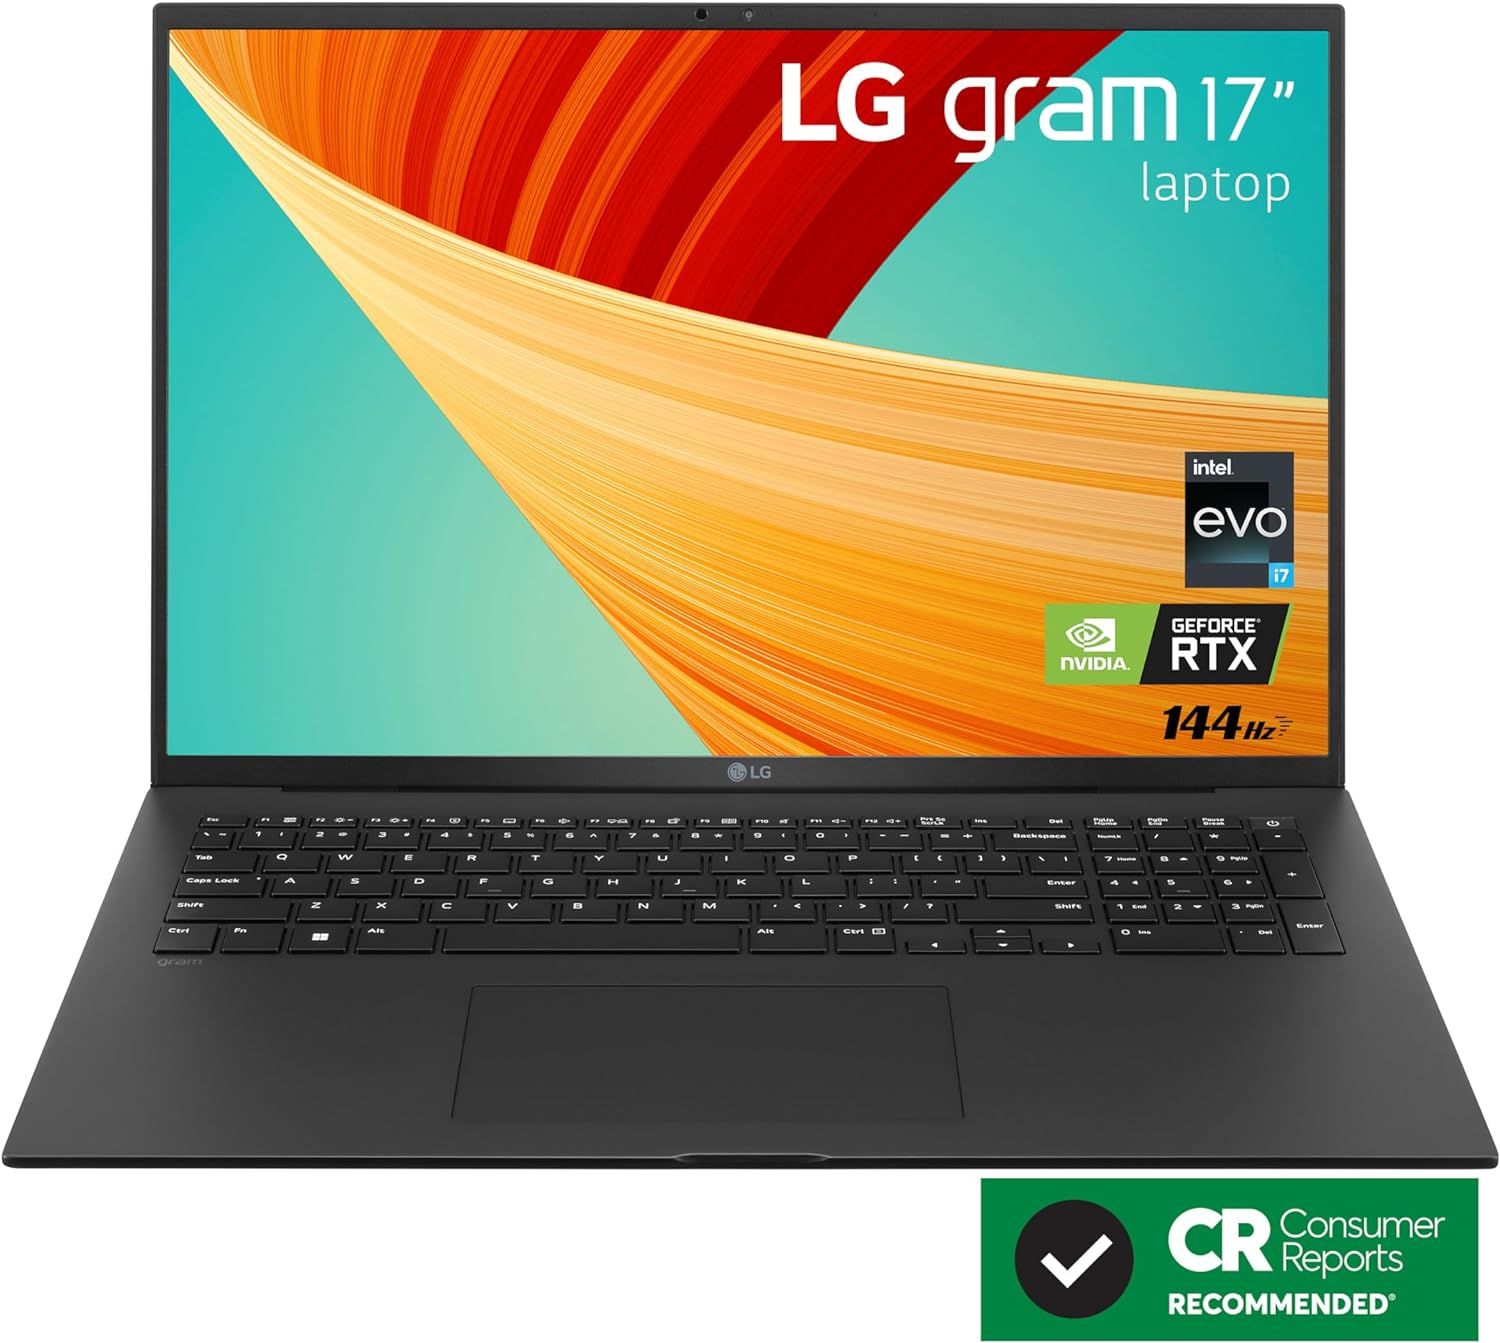 LG gram 17” Lightweight Laptop